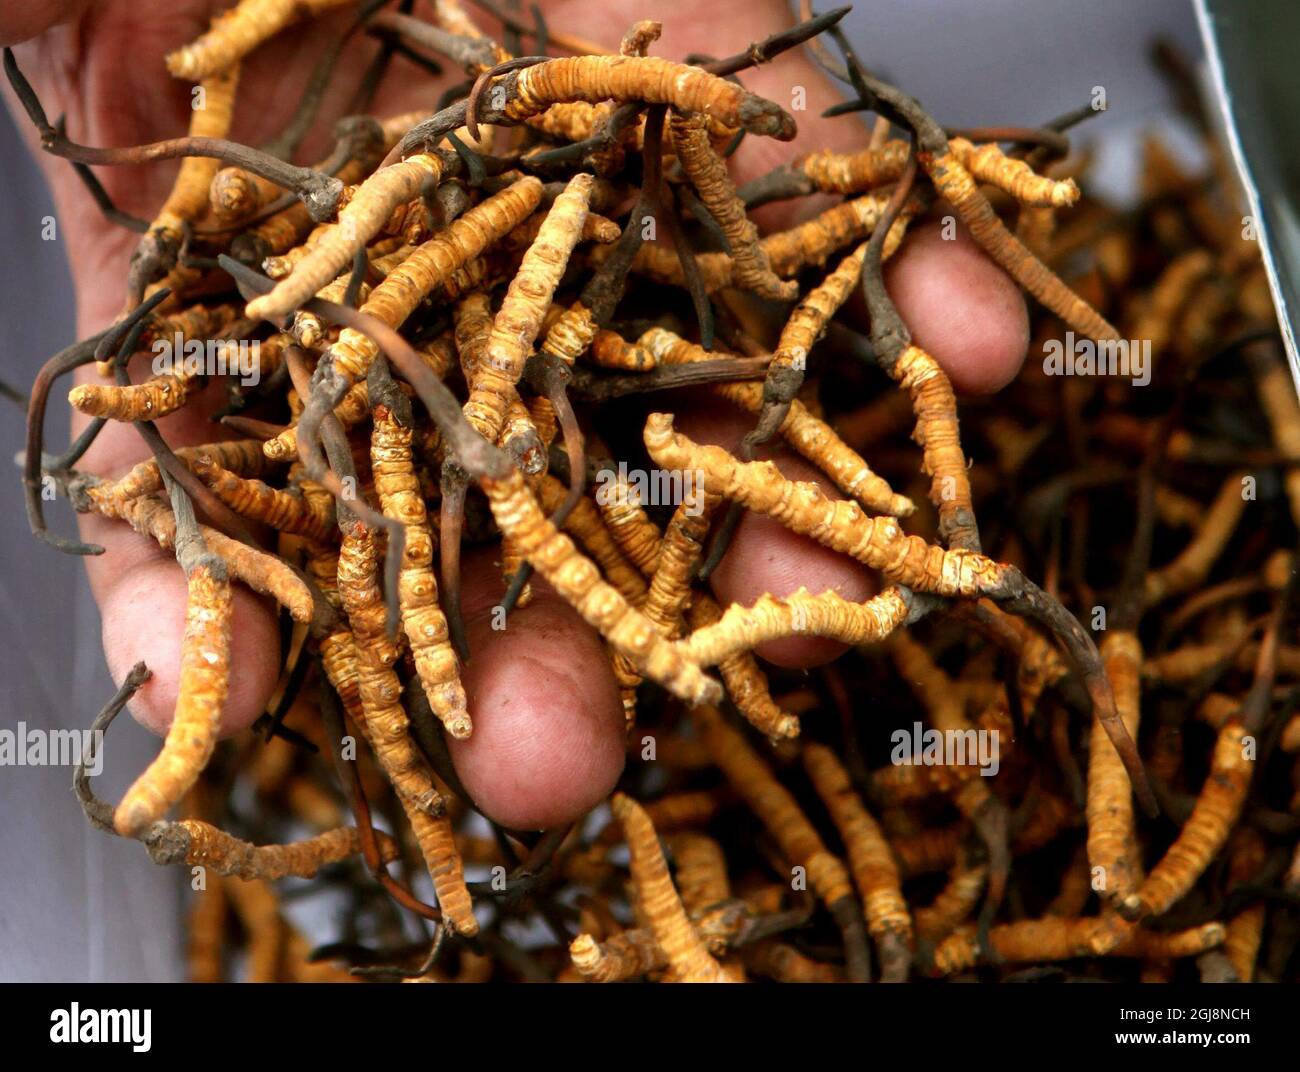 YUSHU 20130521 ''FILE'' - le champignon de la chenille tant convoité est devenu de nombreux éleveurs et agriculteurs tibétains source principale de revenus. Foto Torbjorn Petersson / SCANPIX / Kod 4278 Banque D'Images